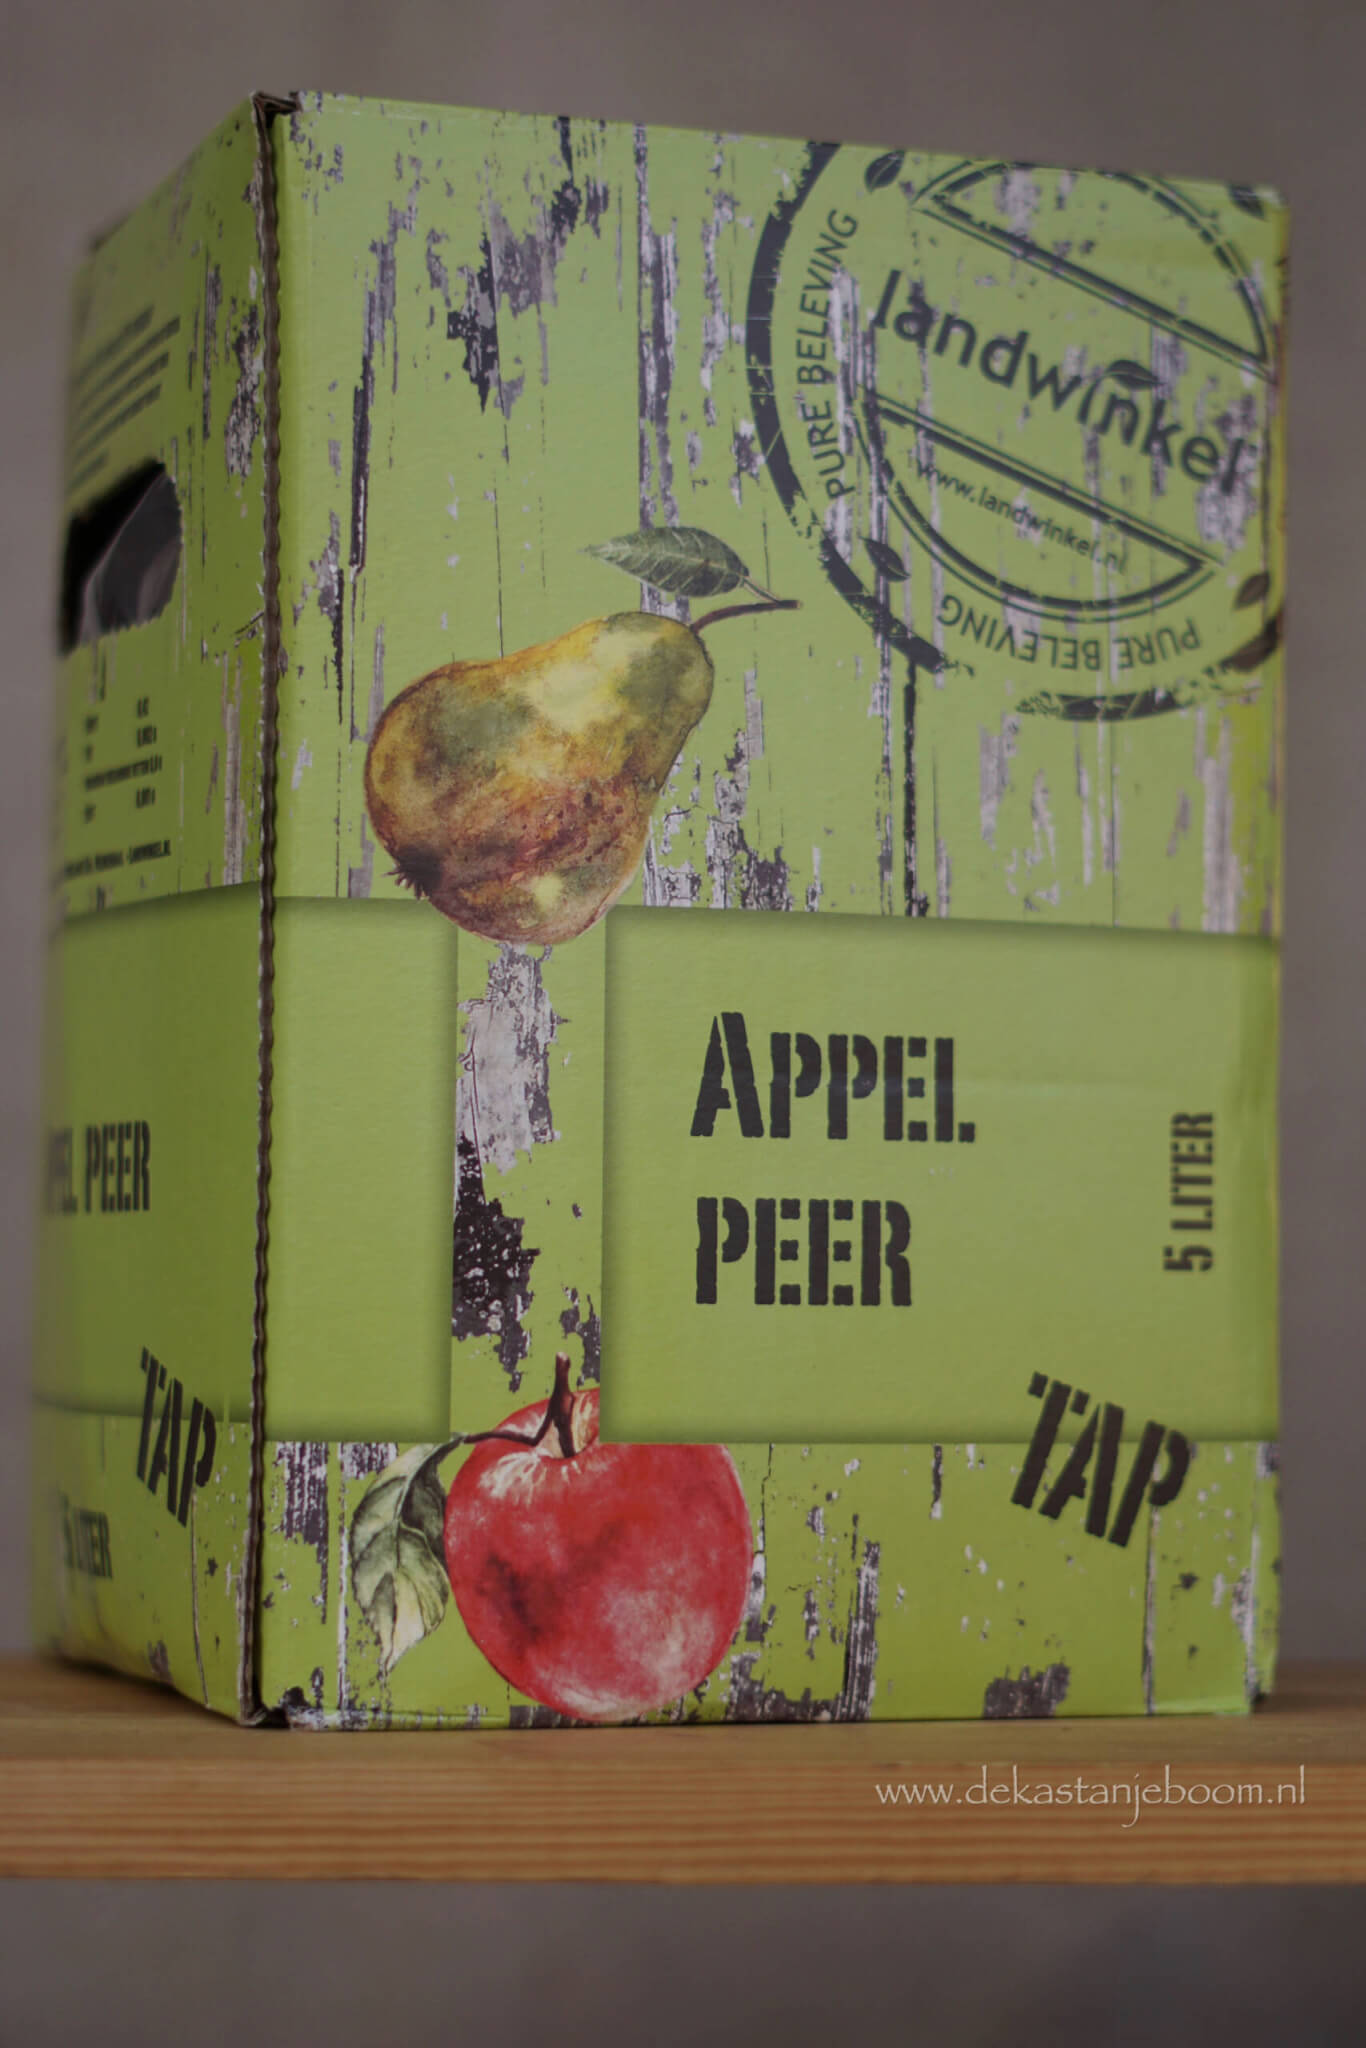 Tap appel peer 5 liter